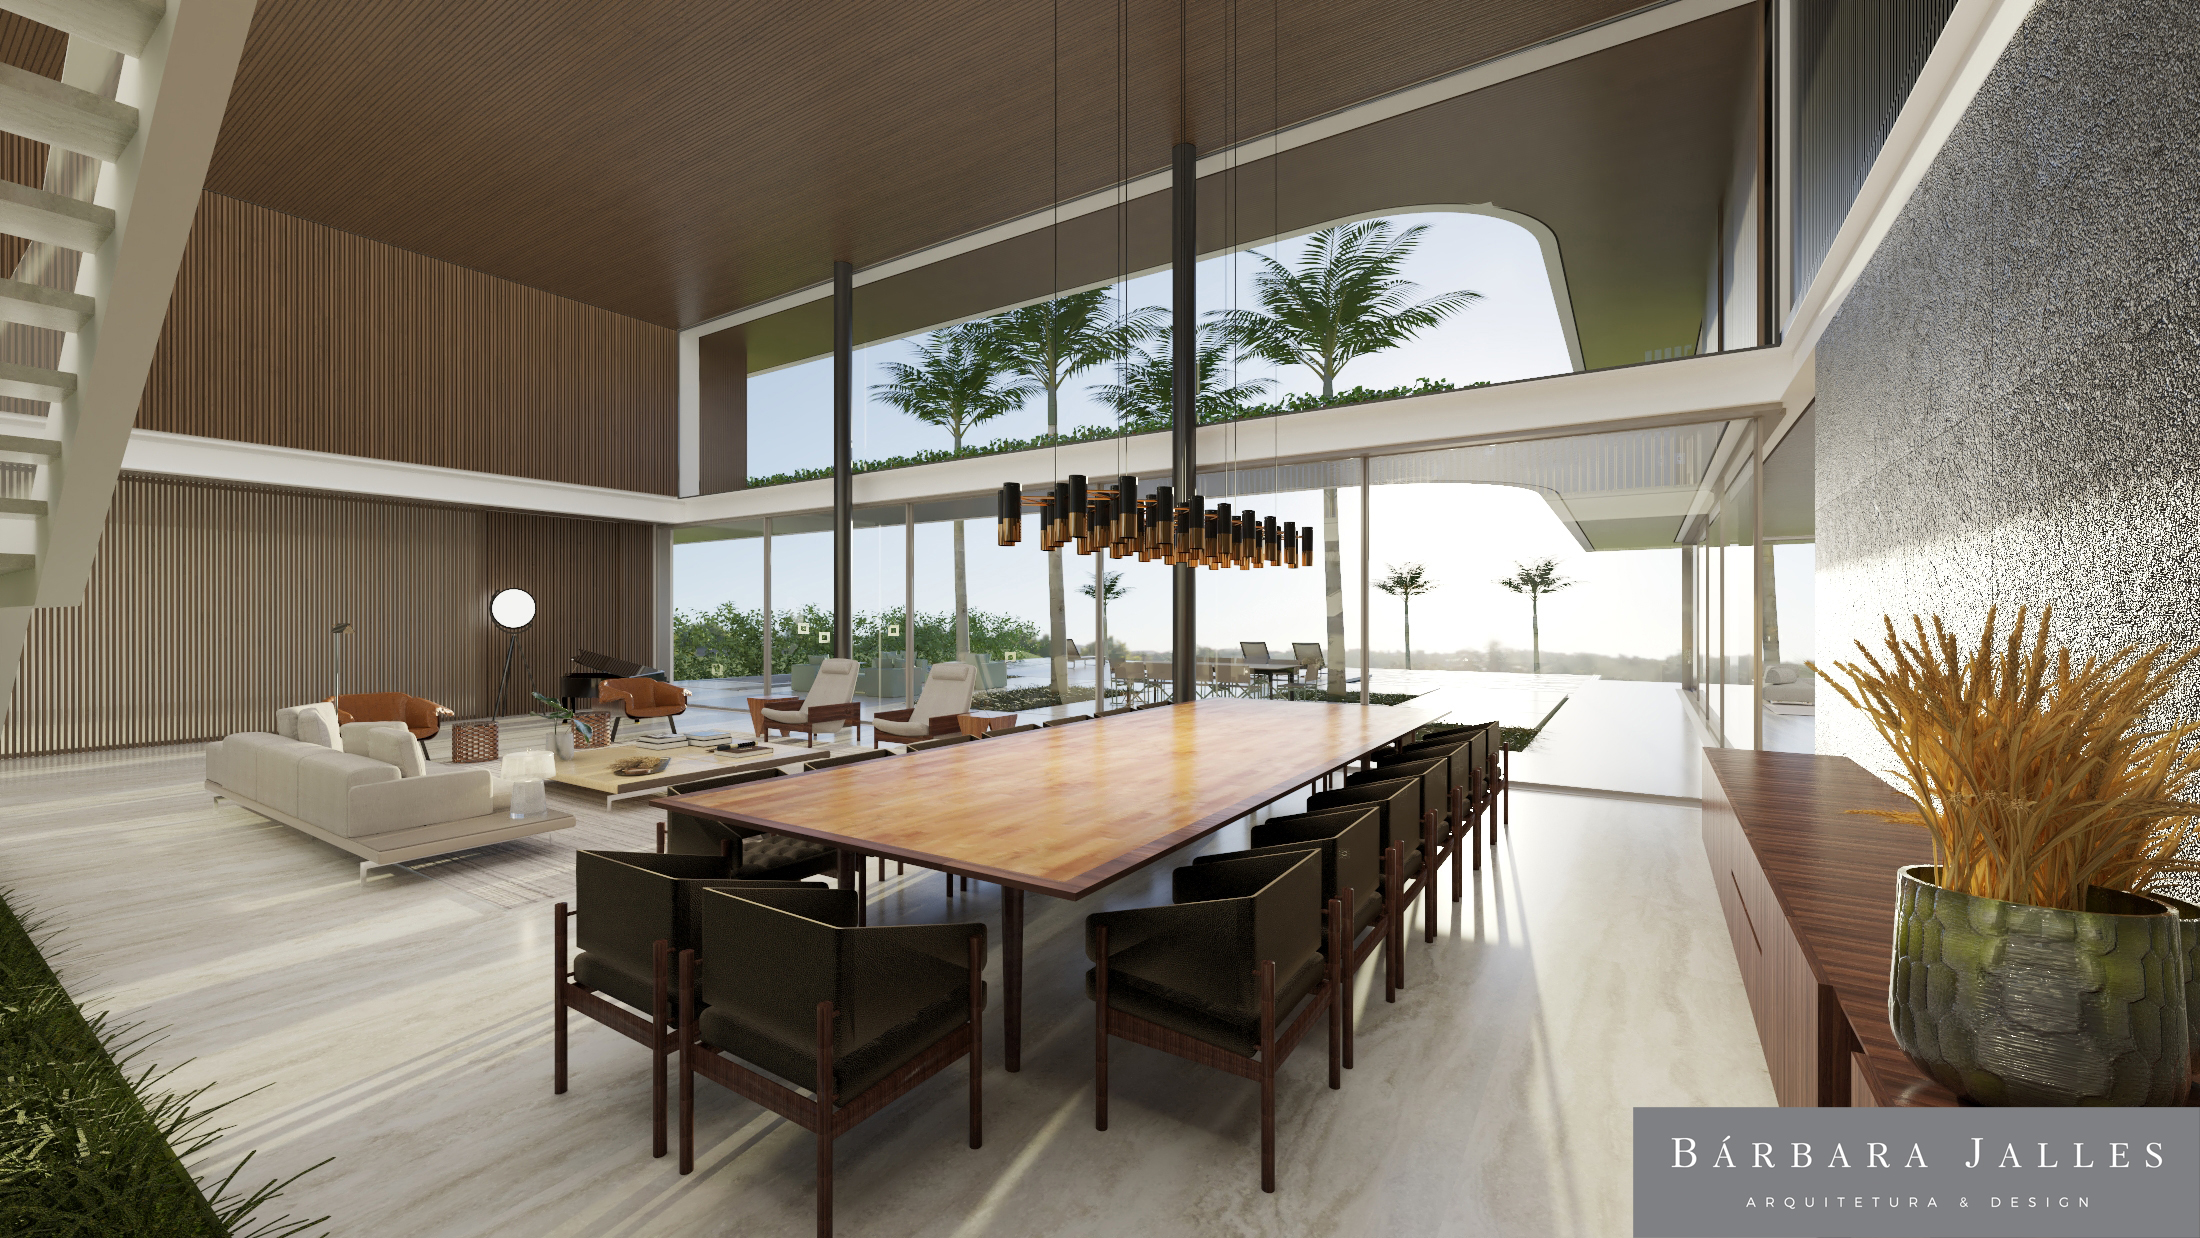 Imagem 3D de projeto de casa de campo exibe grande mesa de jantar e área envidraçada com árvores altas na entrada.